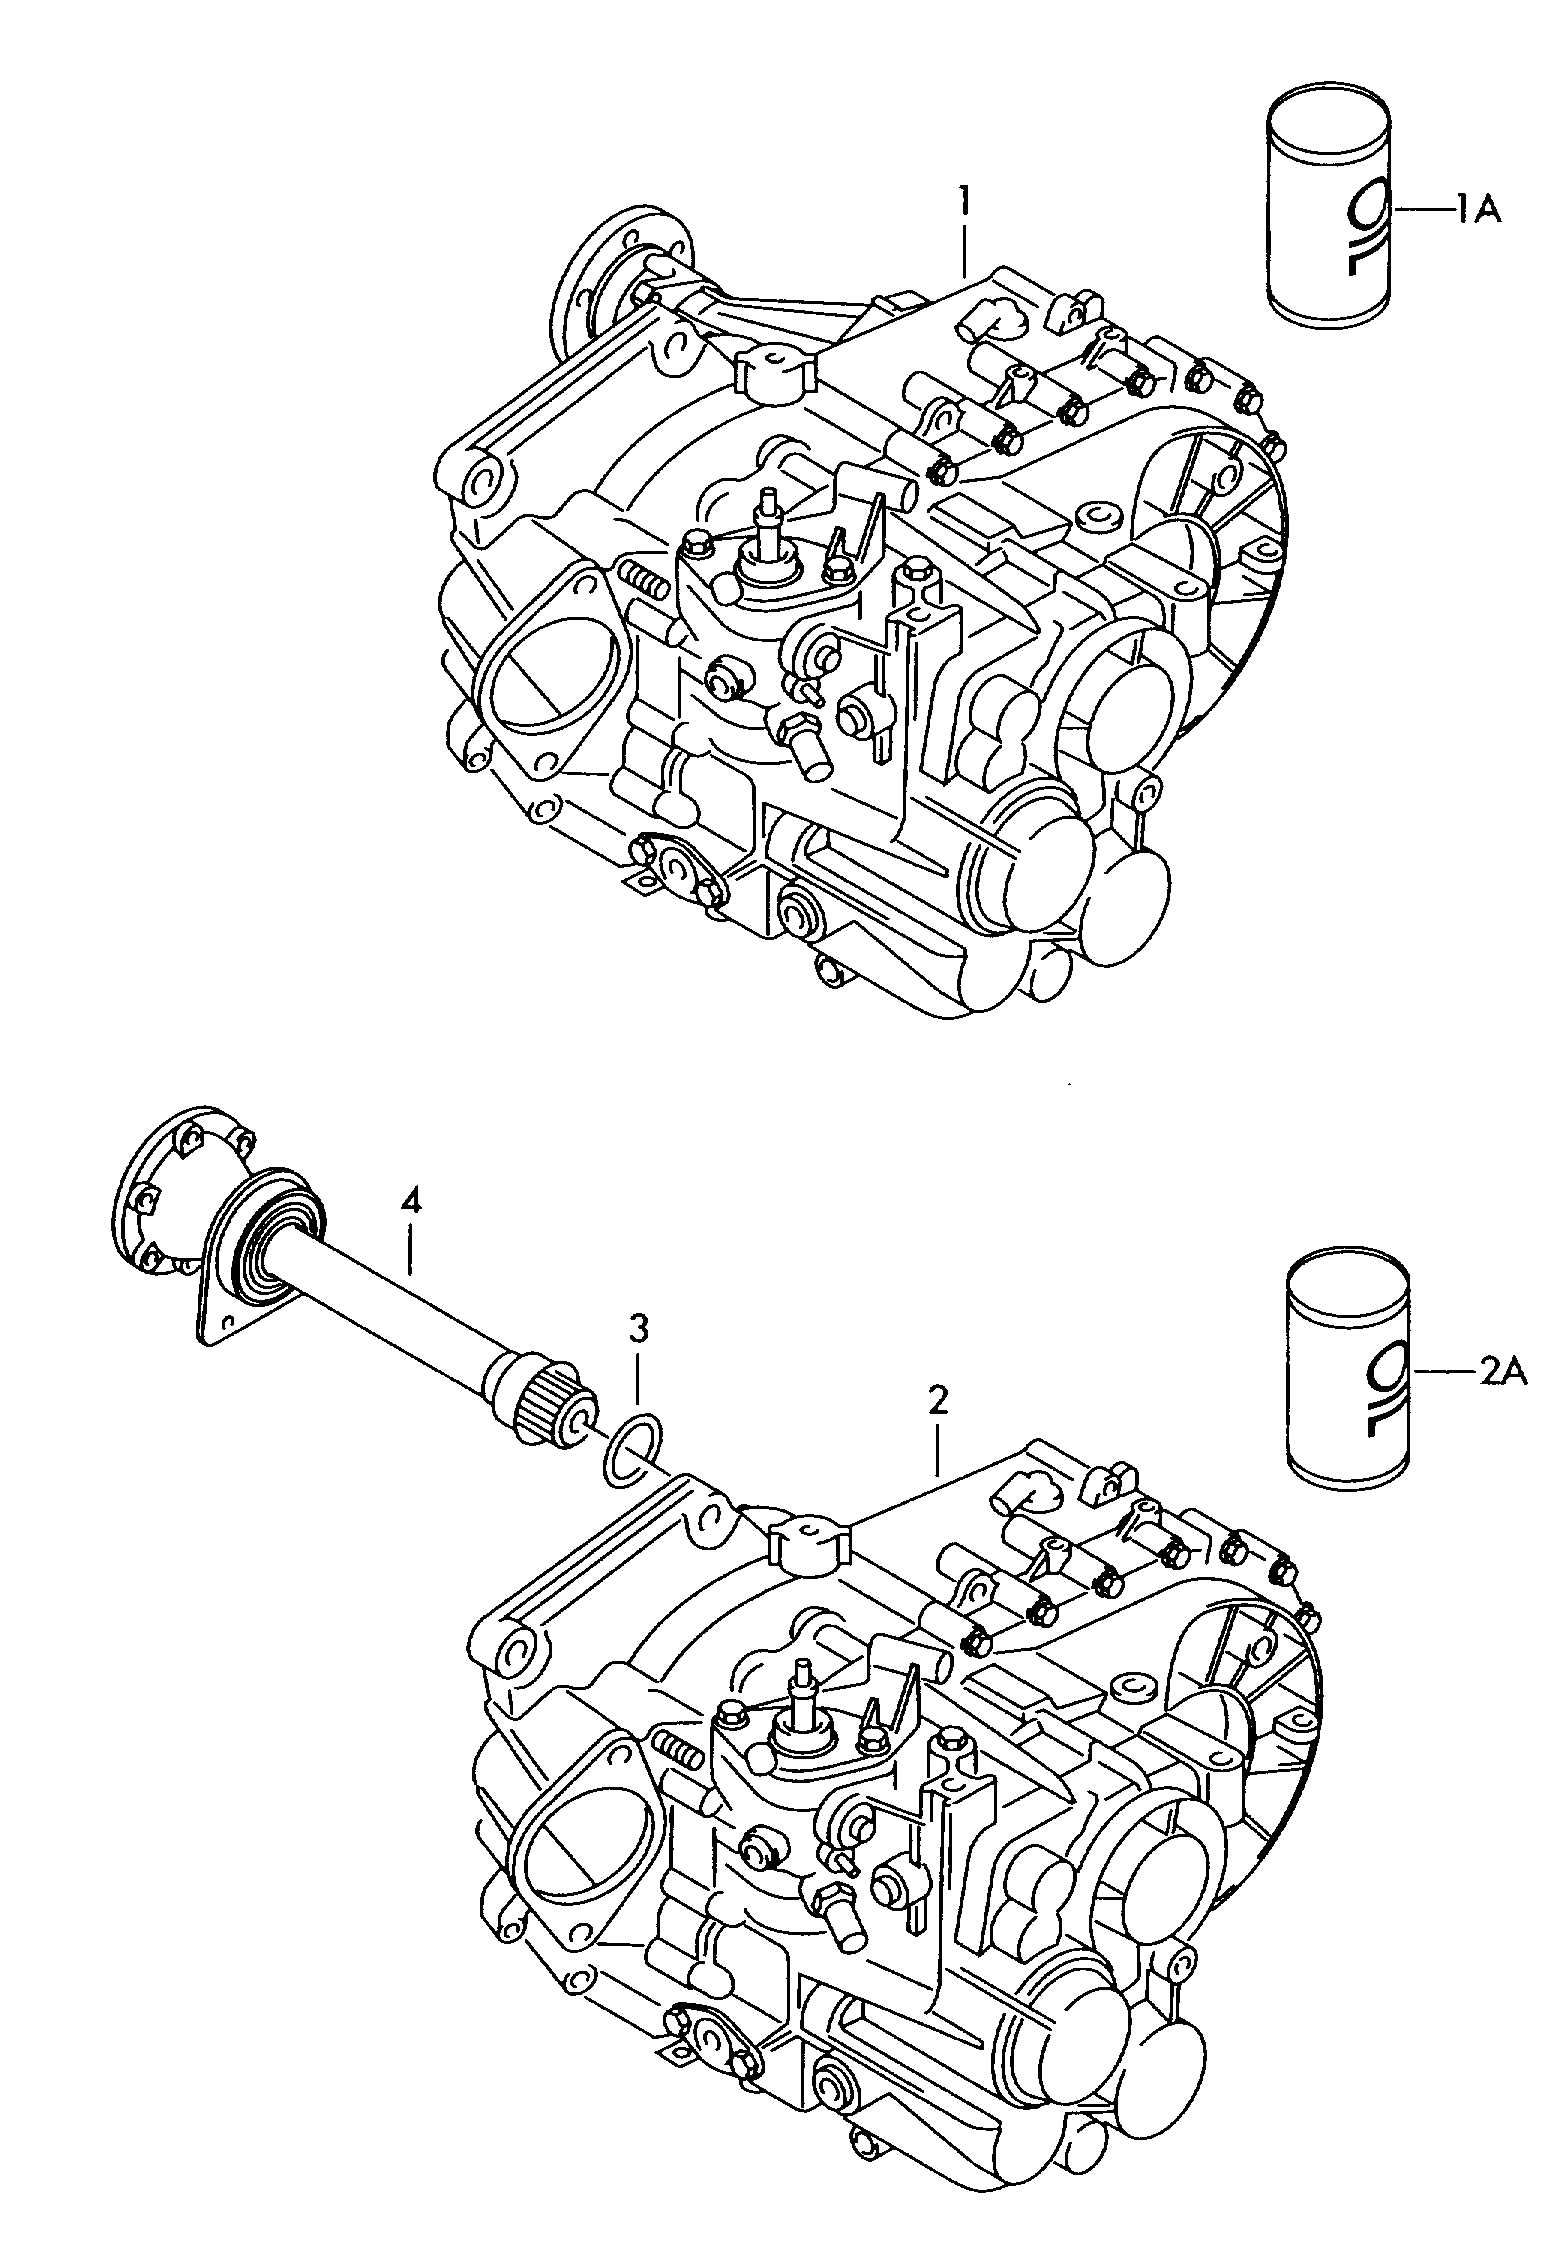 6-speed manual transmission for Volkswagen Sharan Sharan (2001 - 2002)